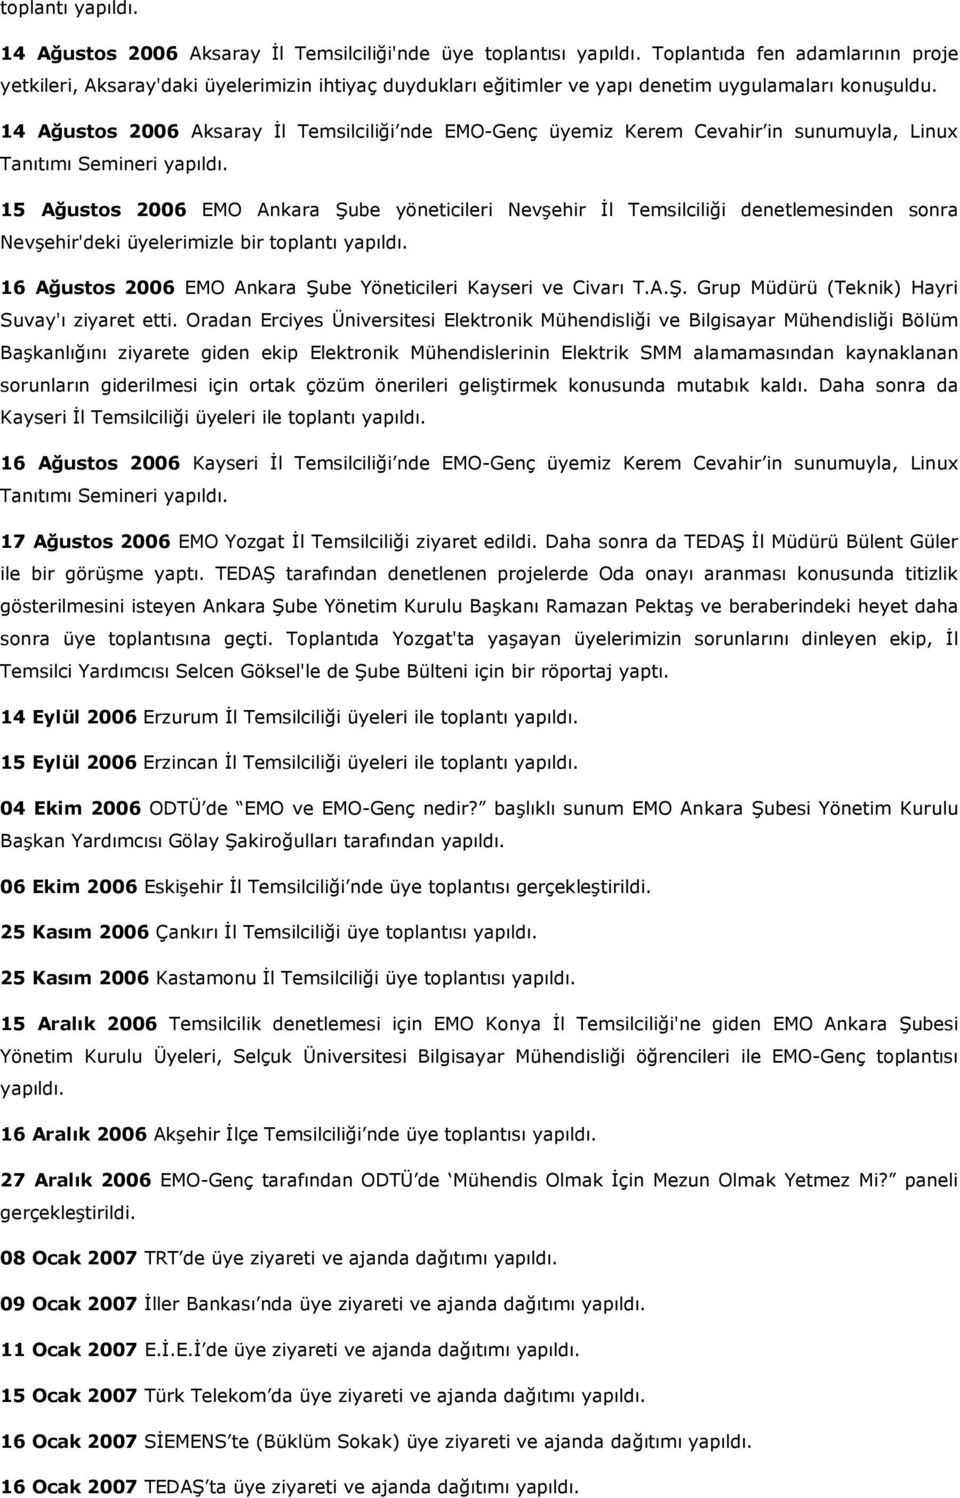 14 Ağustos 2006 Aksaray İl Temsilciliği nde EMO-Genç üyemiz Kerem Cevahir in sunumuyla, Linux Tanıtımı Semineri 15 Ağustos 2006 EMO Ankara Şube yöneticileri Nevşehir İl Temsilciliği denetlemesinden